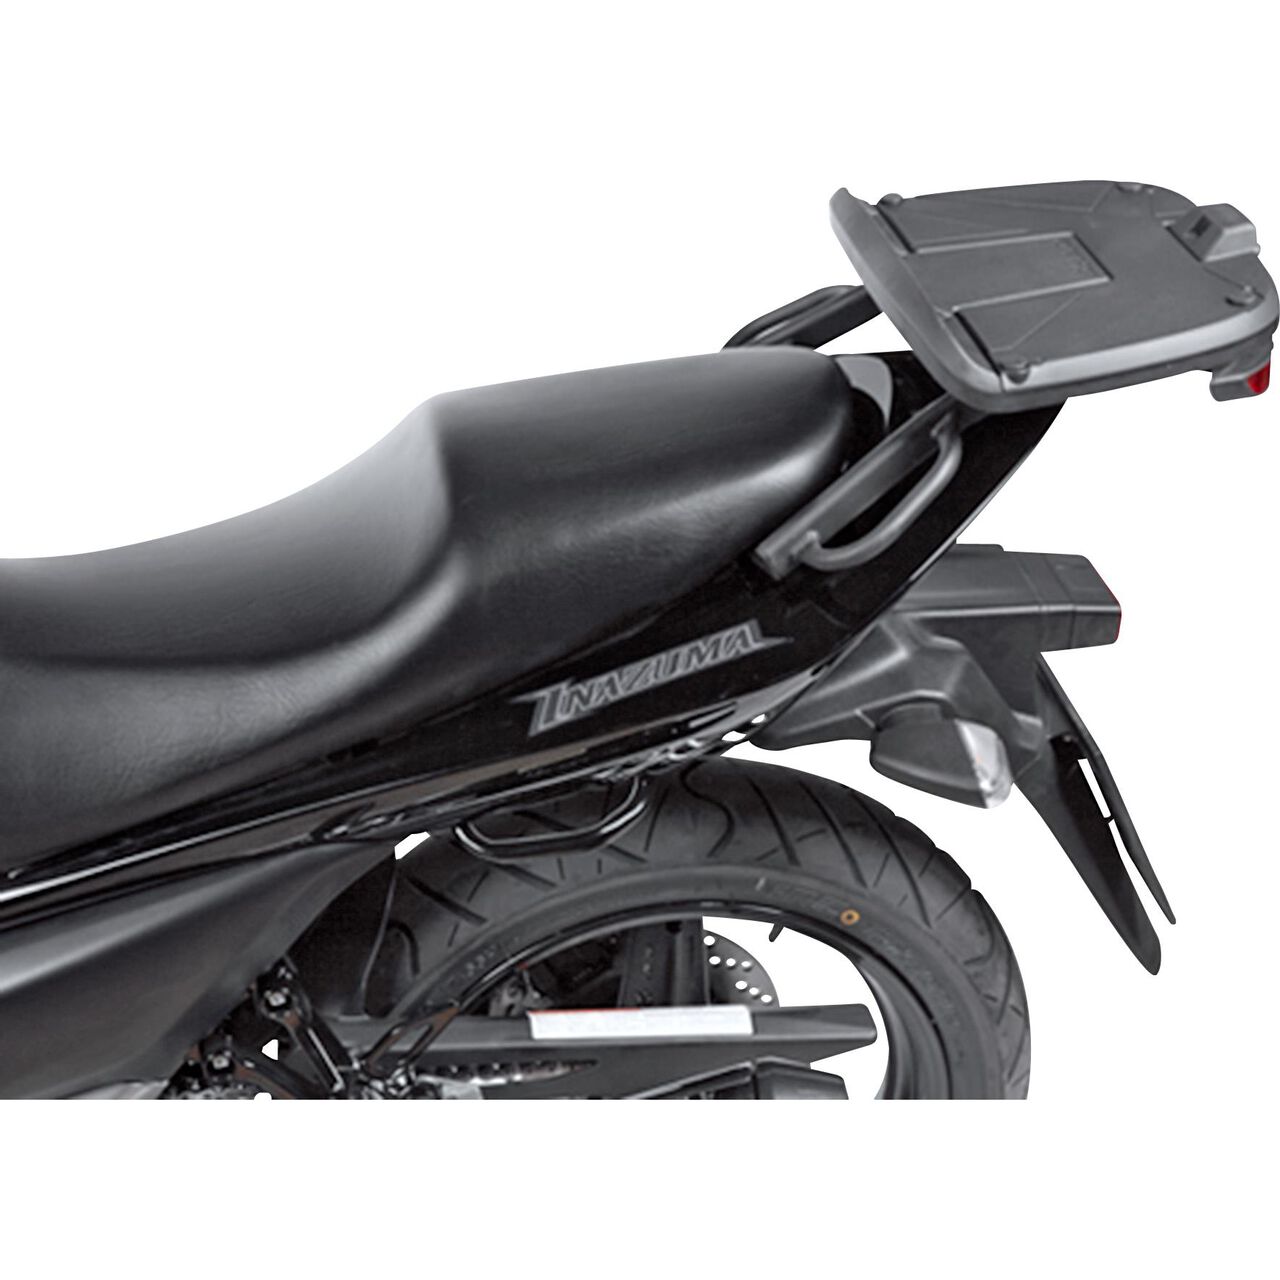 New Oil Filter Fits Suzuki GW250F Inazuma Motorcycle 2012 2013 2014 2015 2016